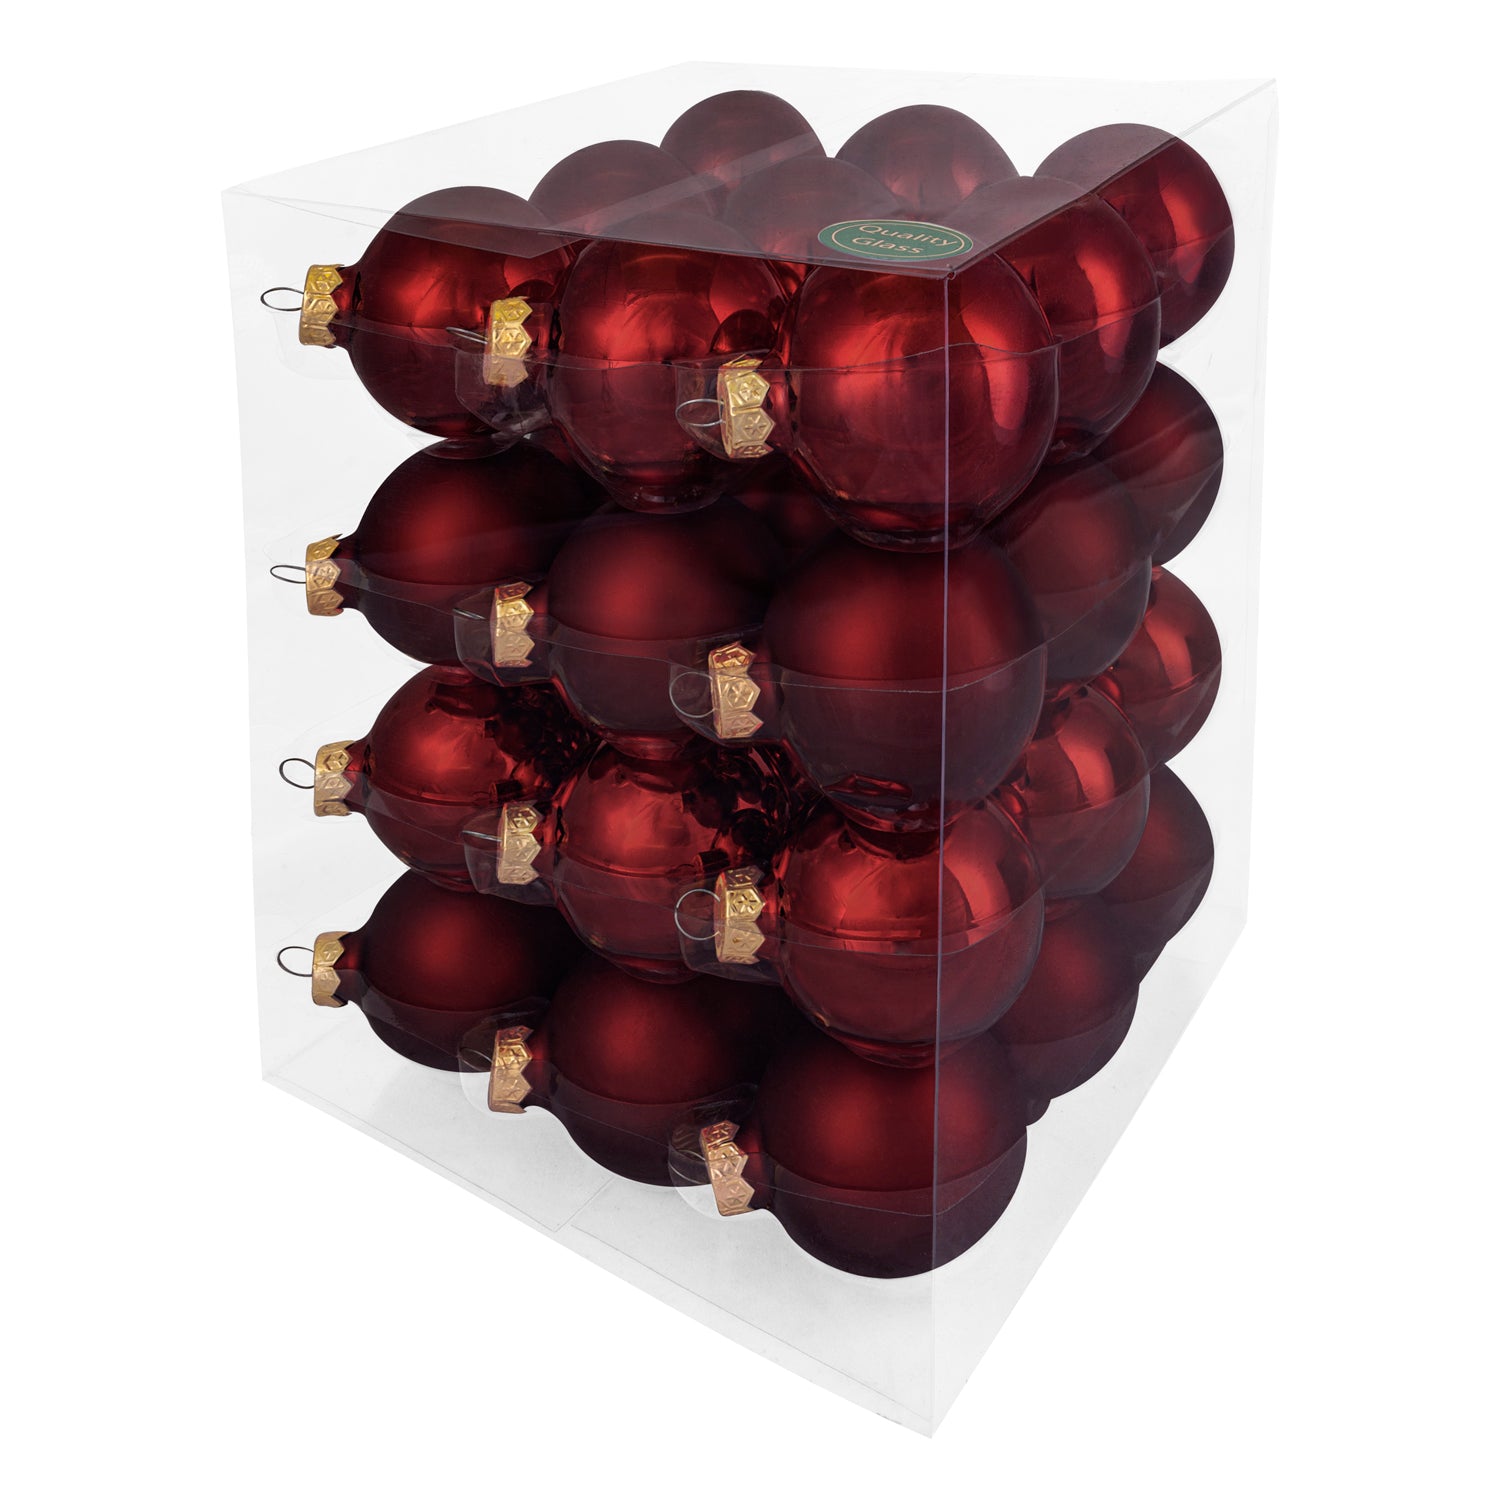 Decosy® Dark Red Kerstballen Glas 48 stuks - 32x 60mm en 16x 80mm